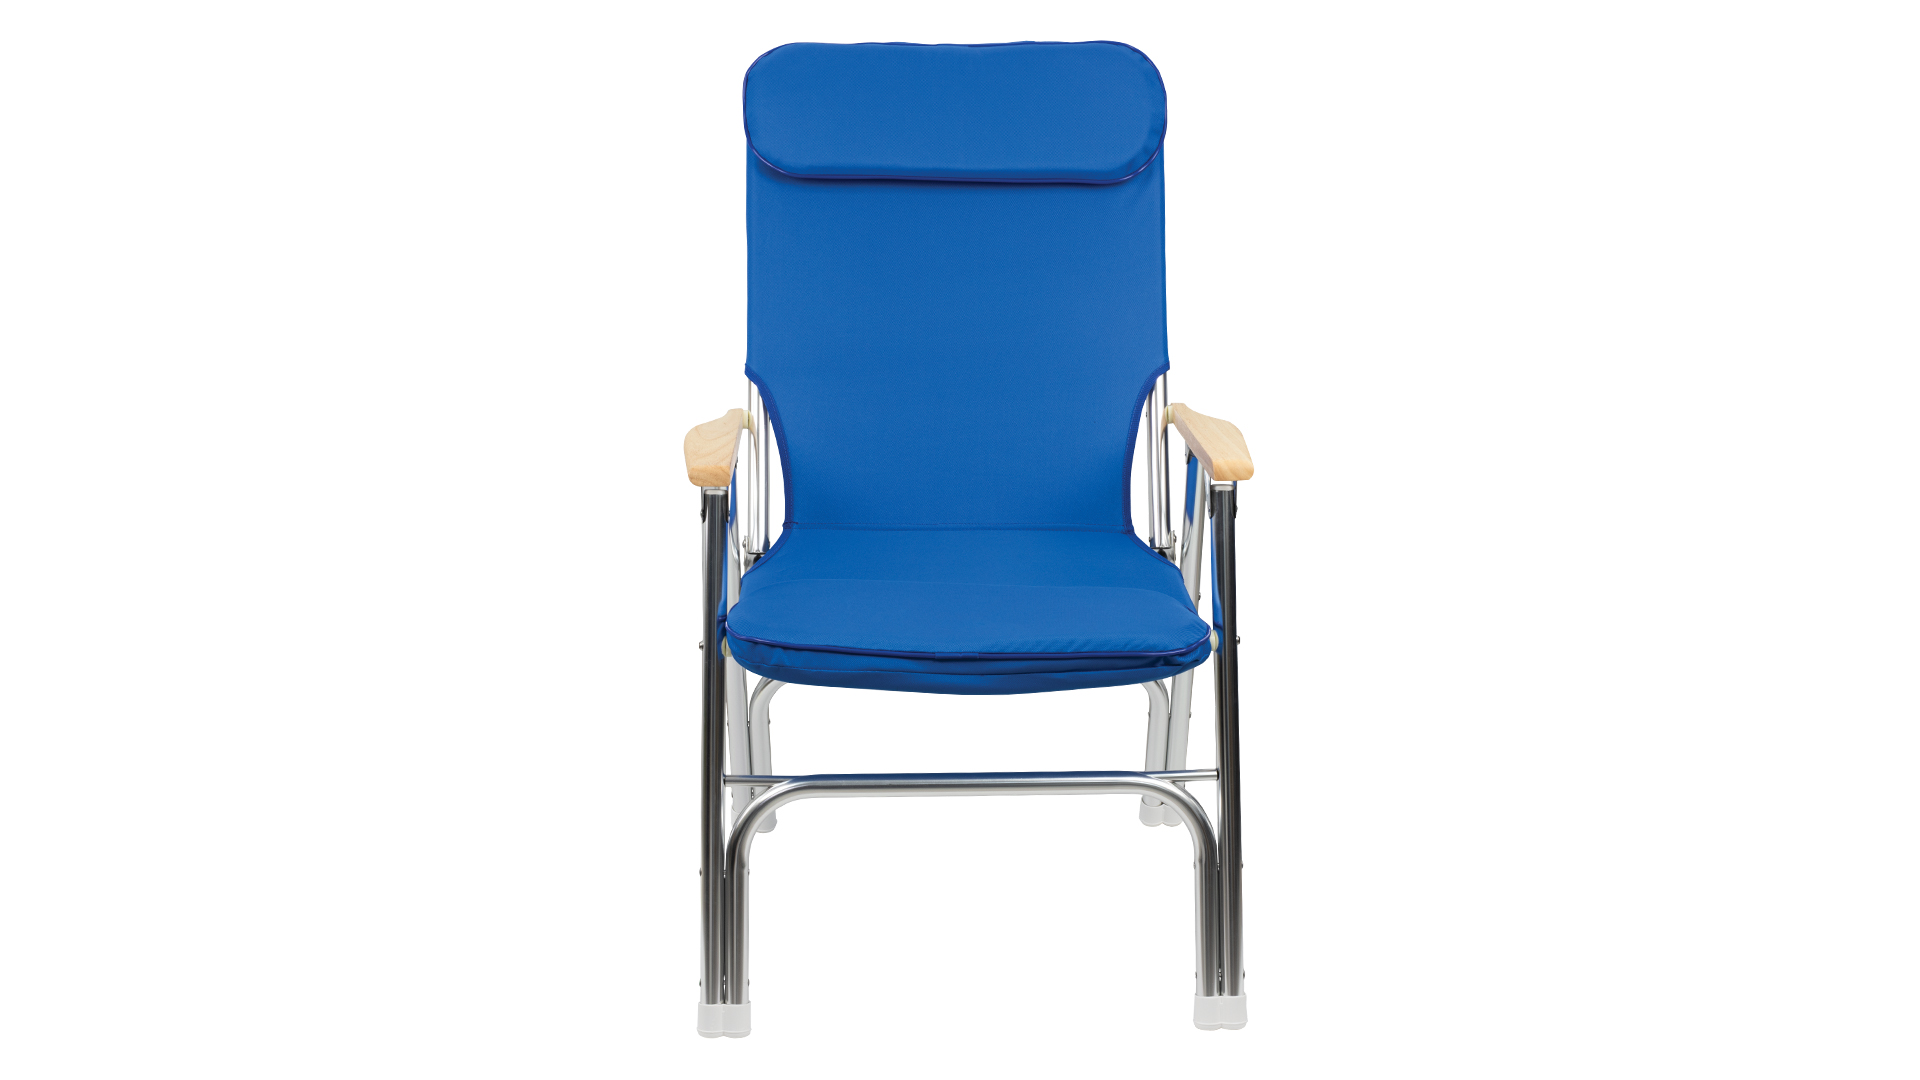 Springfield Marine Premium Deck Chair, White 1080125-CR - The Home